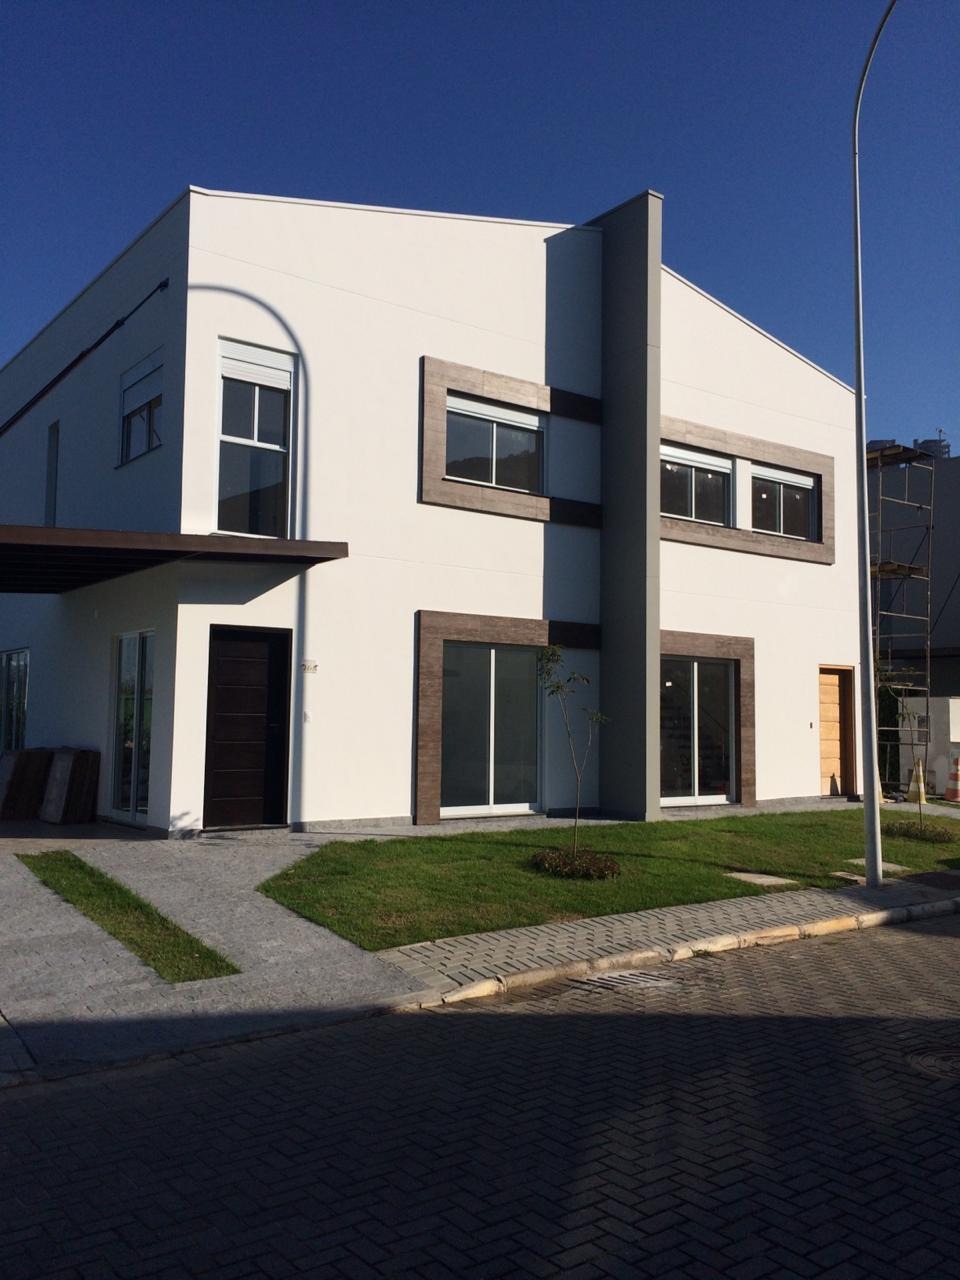 Ótima Oportunidade! Casa Geminada em Condomínio Fechado com 3 Dormitórios Localizado na Barra em Balneário Camboriú -SC